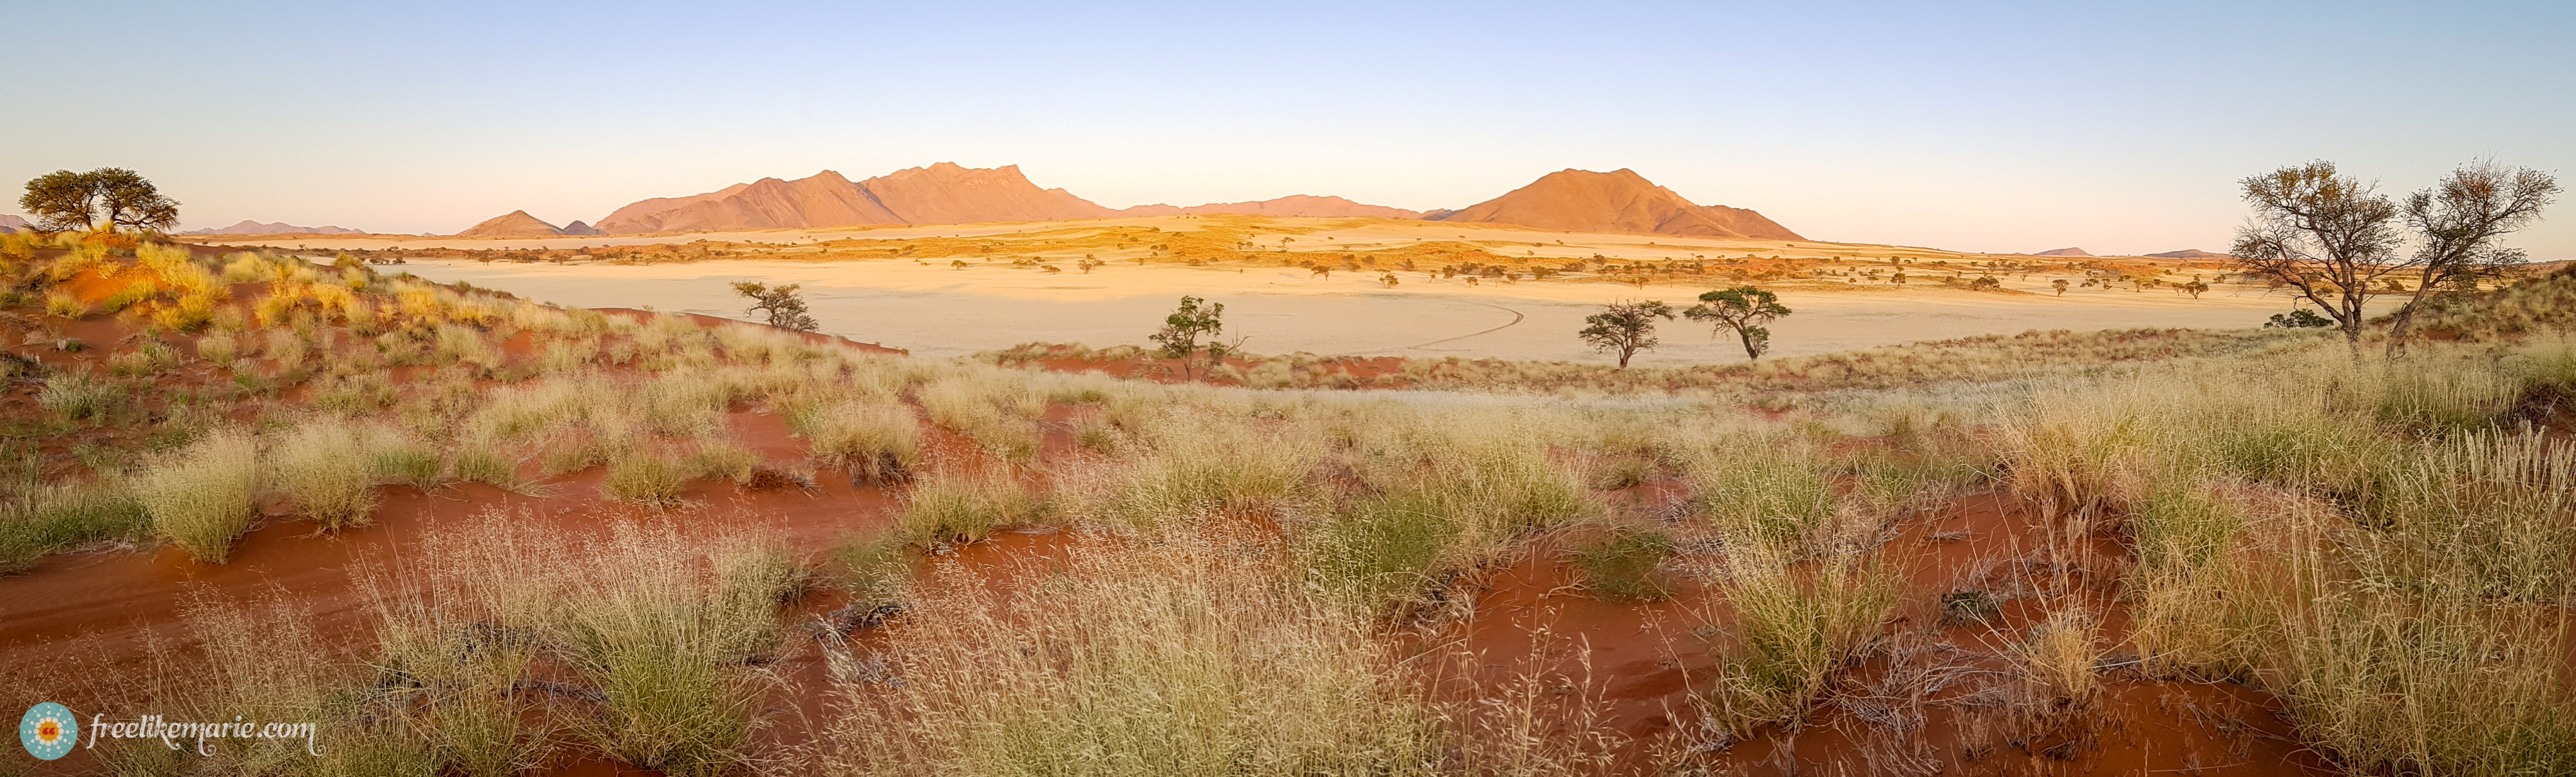 NamibRand Nature Reserve at Sunrise